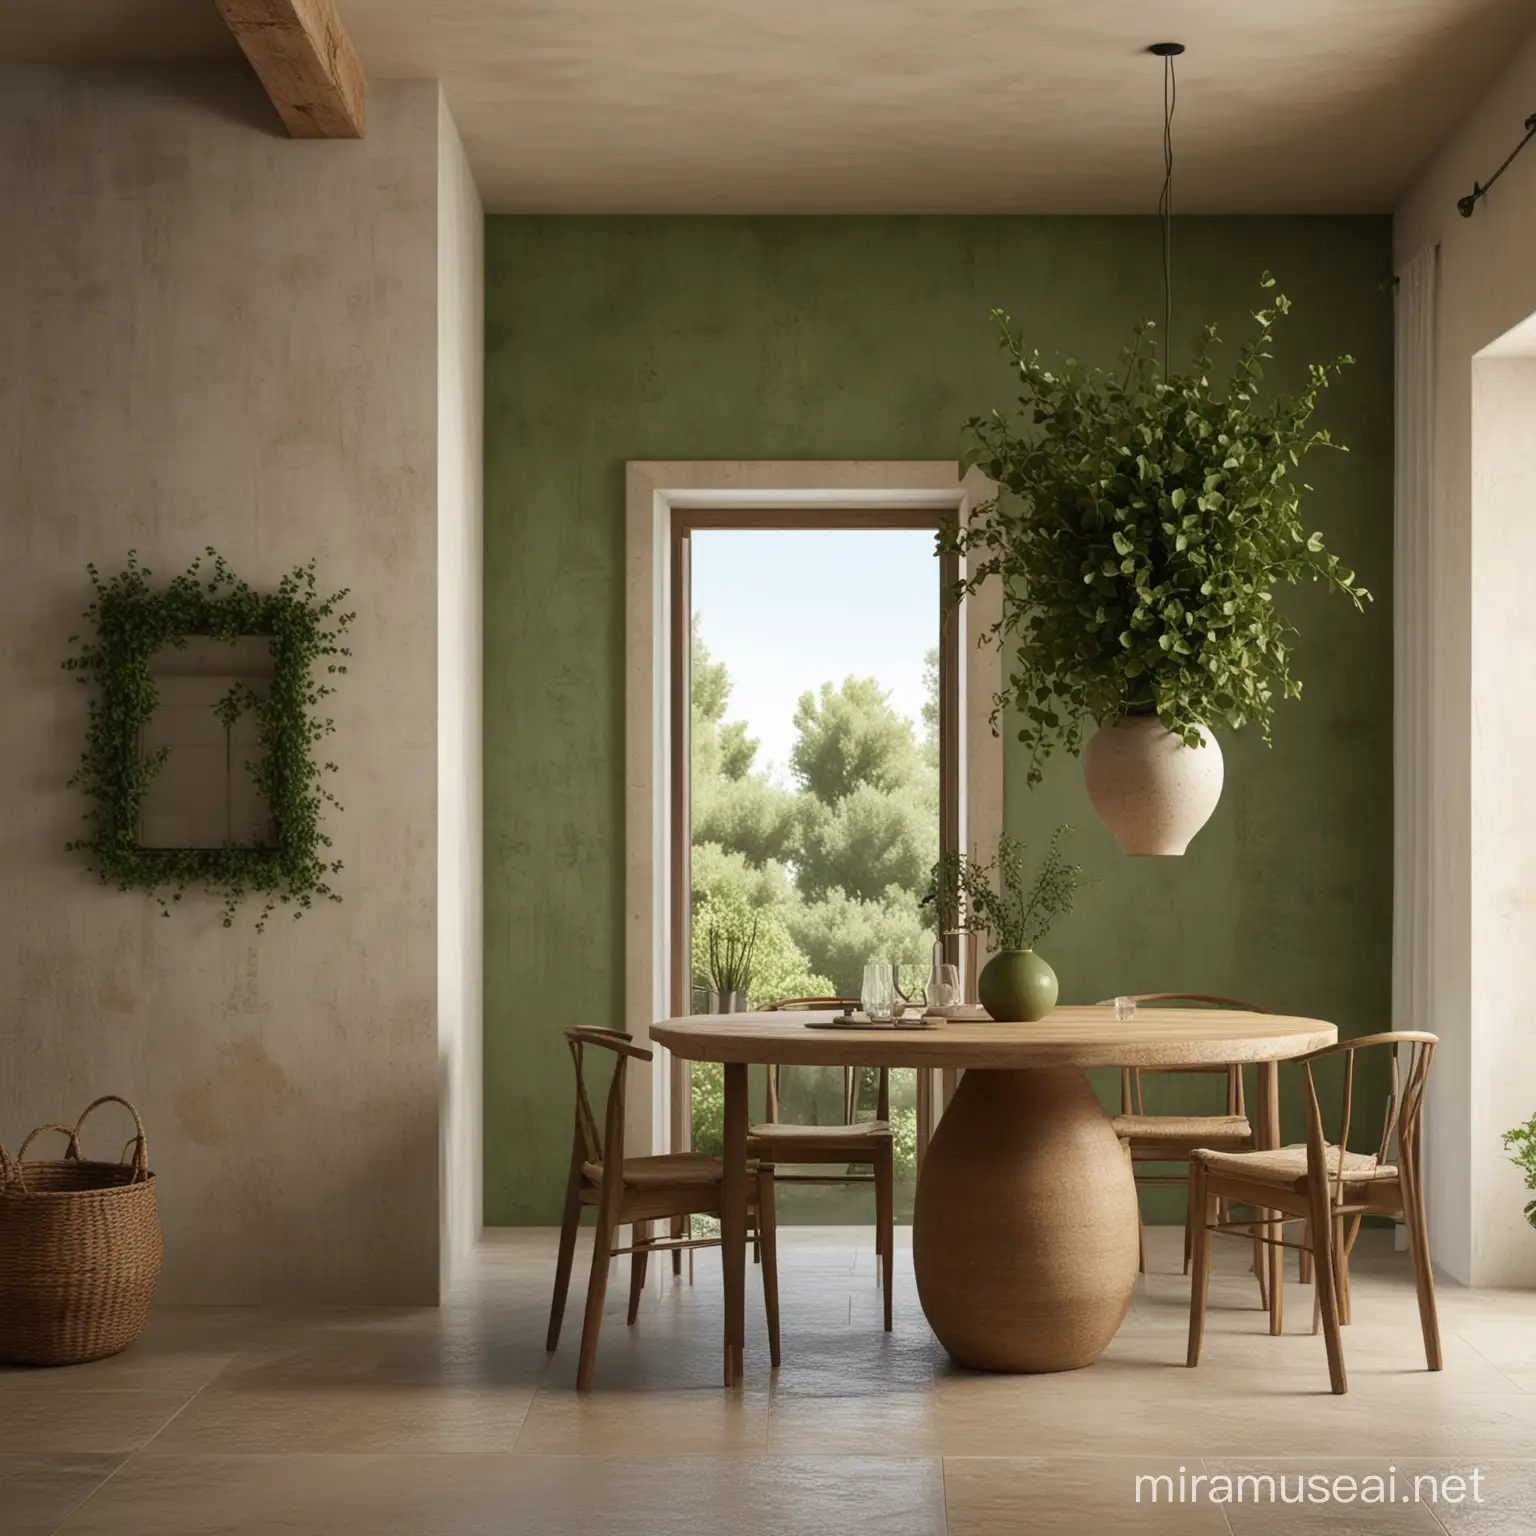 GreekInspired Minimal Mallorcan Dining Room with Ivy Green Wall and Wabi Sabi Vase